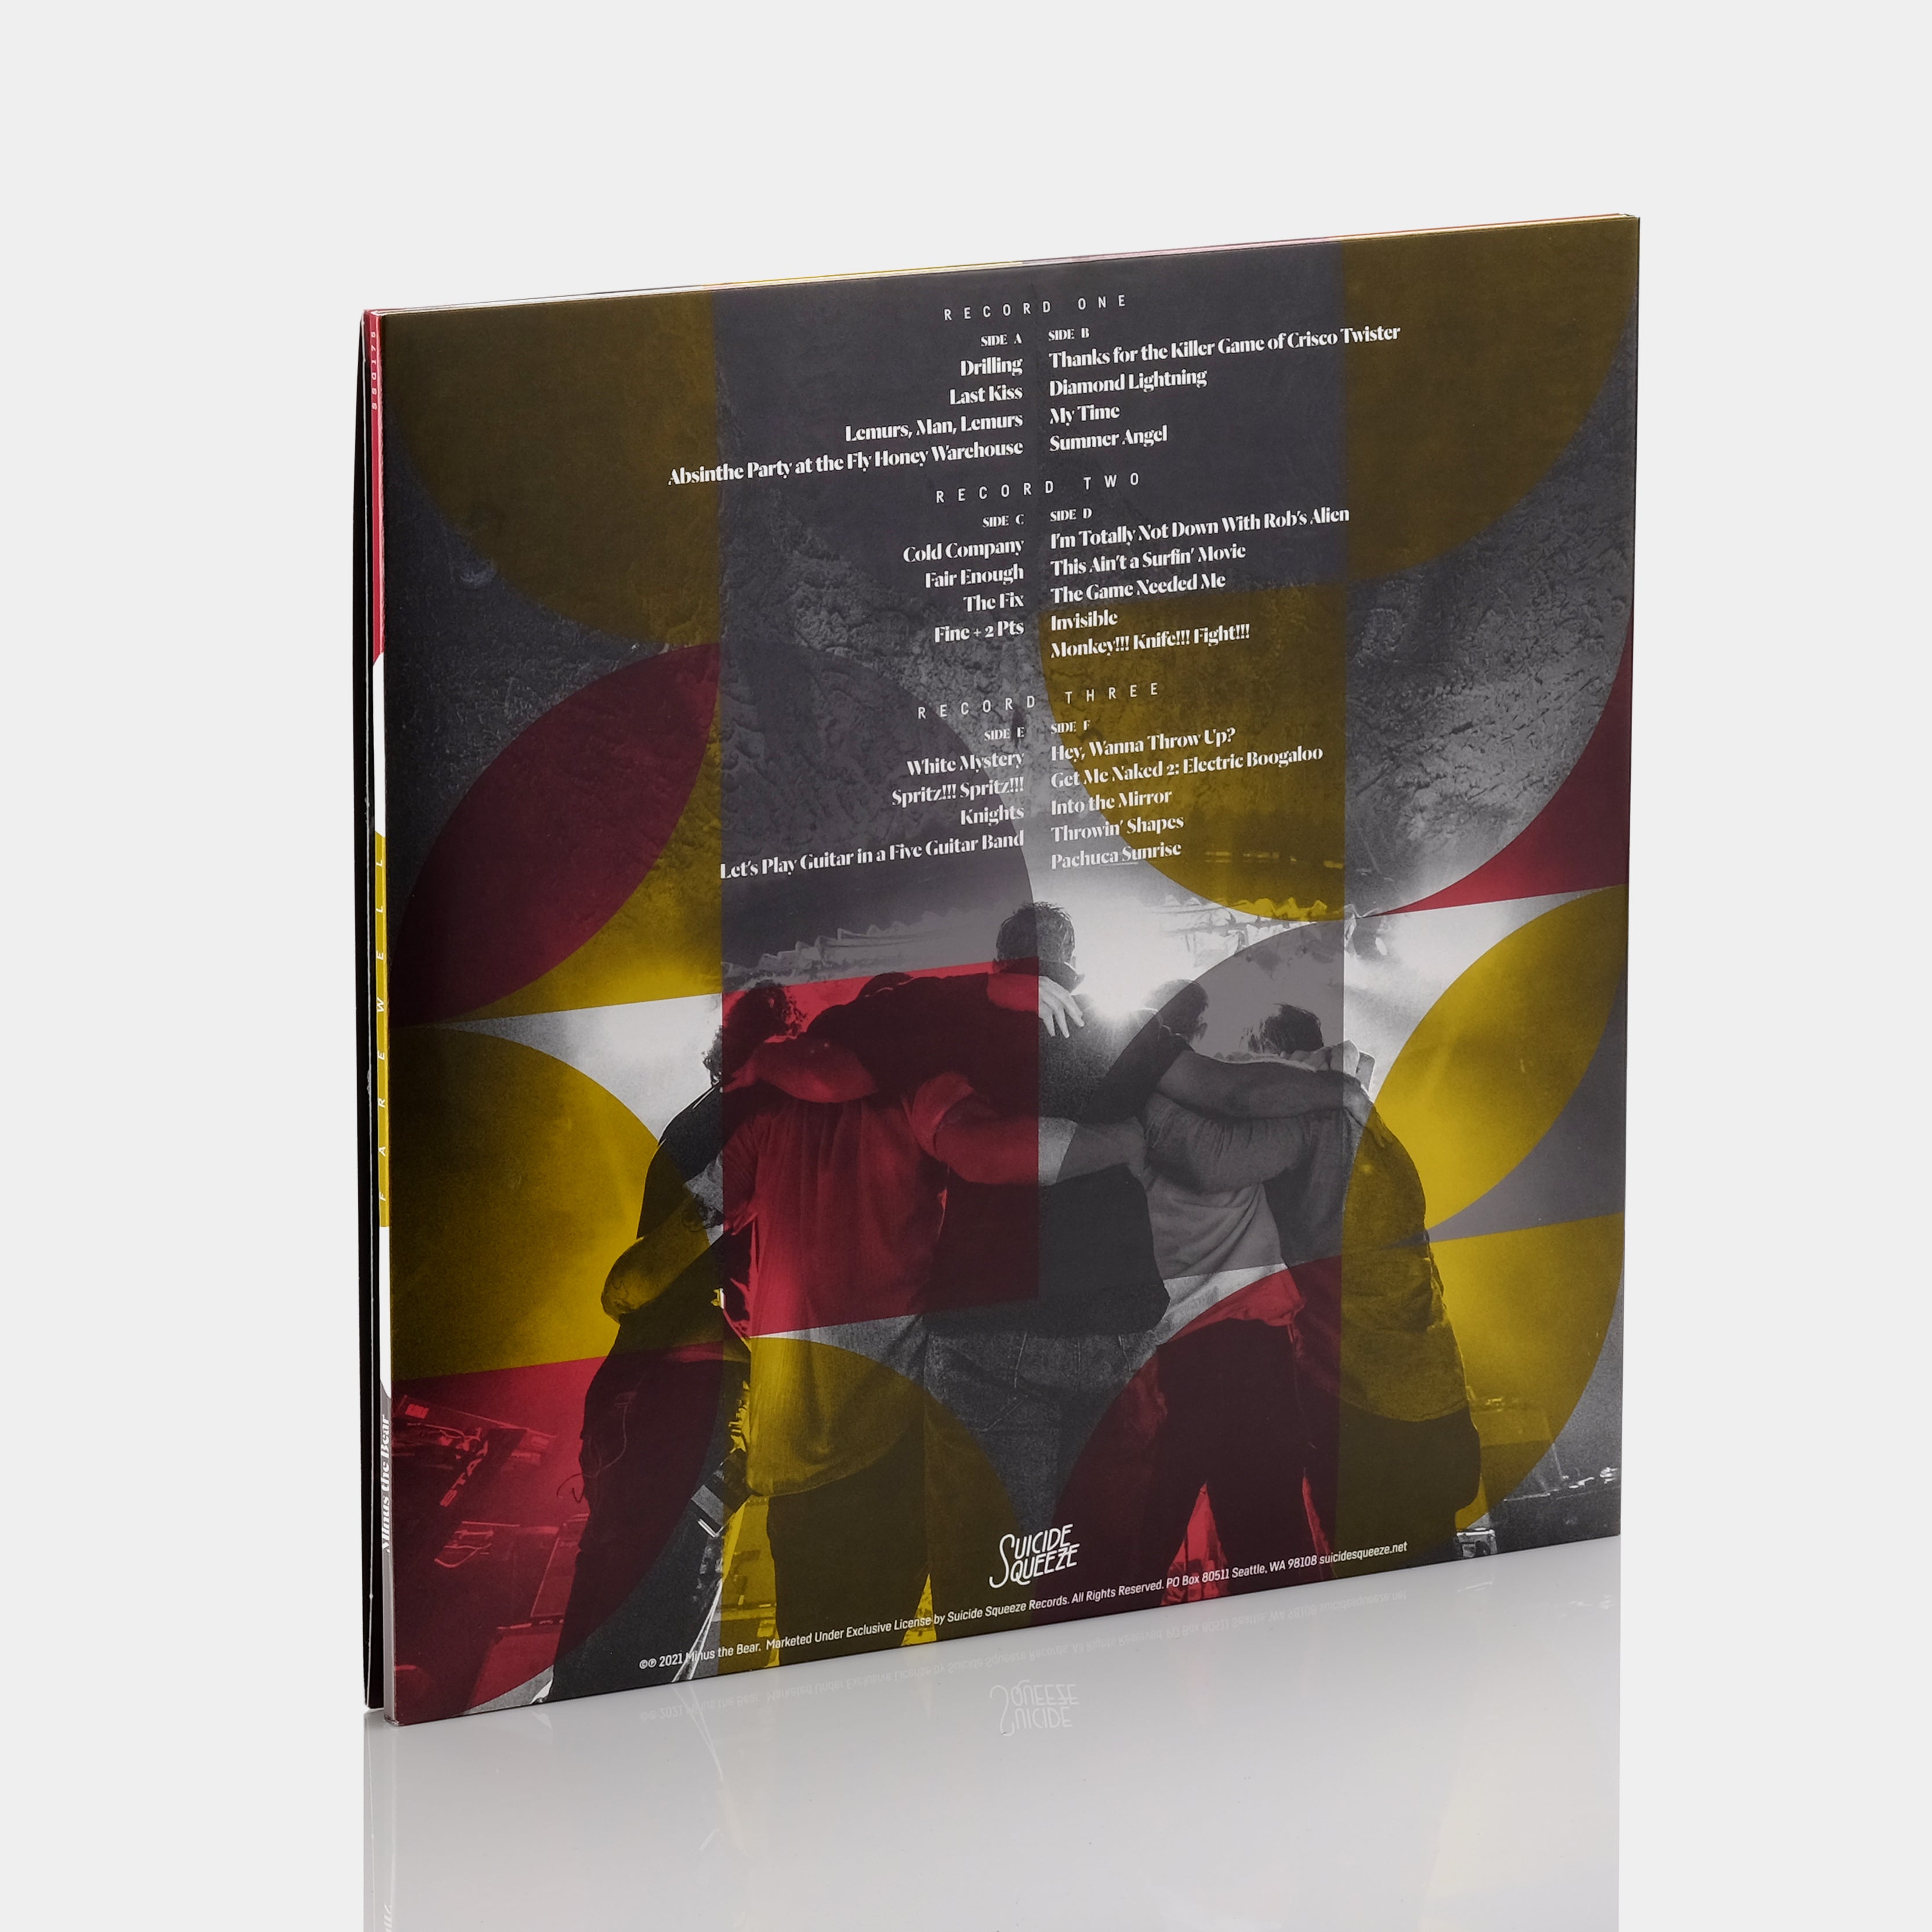 Minus The Bear - Farewell 3xLP Grey Vinyl Record